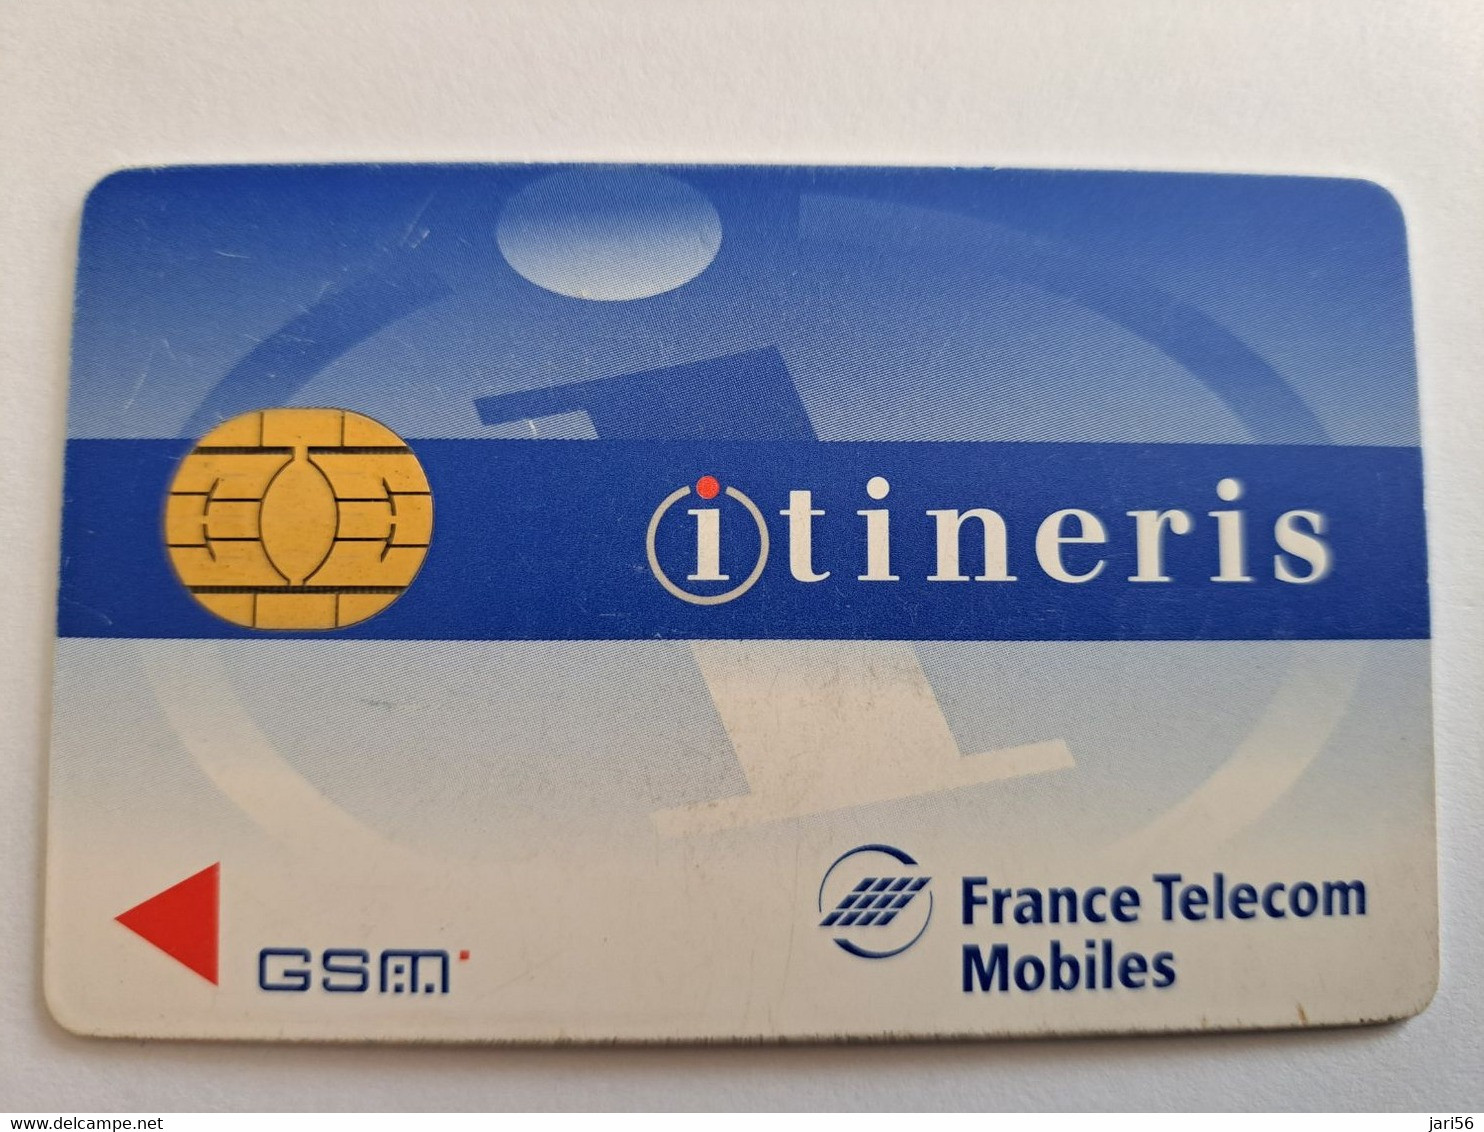 FRANCE/FRANKRIJK   SIM  GSM CARD / ITENERIS  MOBILE   WITH CHIP     ** 10487 ** - Mobicartes: Móviles/SIM)